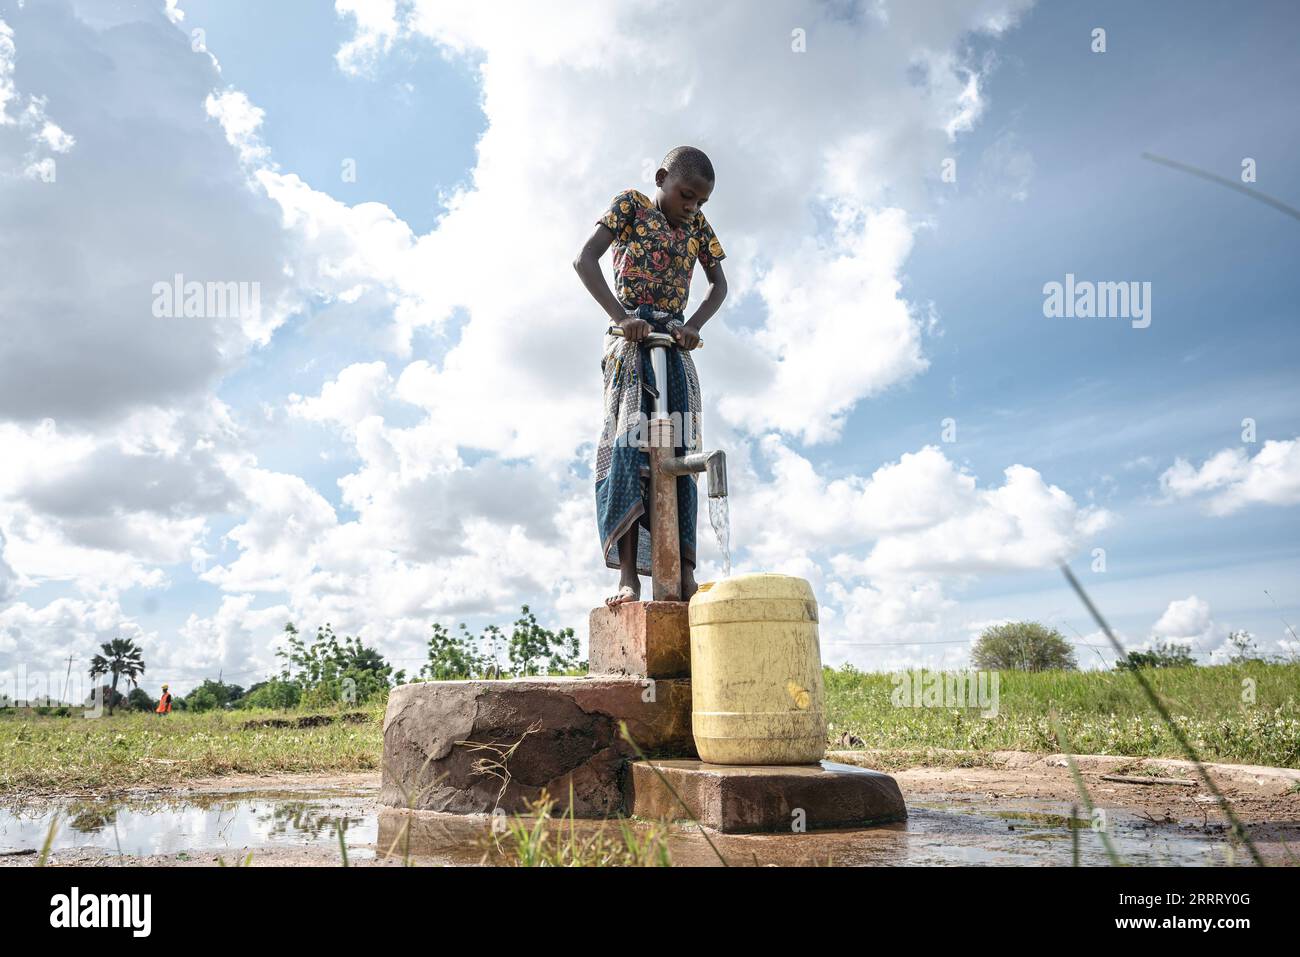 230617 -- MWANZA, 17 giugno 2023 -- Un ragazzo prende l'acqua da una vecchia pompa dell'acqua nella regione di Mwanza, Tanzania, 12 giugno 2023. La regione di Mwanza si trova nel nord-ovest della Tanzania, al confine con le sponde meridionali del lago Victoria, il più grande lago d'acqua dolce in Africa e il secondo più grande al mondo. Sfortunatamente, a causa di infrastrutture inadeguate, i residenti che vivono lungo il lago hanno dovuto affrontare problemi di scarsità d'acqua. Kelvin Josephat Kituruka, nativo di Mwanza, si unì alla China Civil Engineering Construction Corporation CCECC come ingegnere di qualità dopo aver completato i suoi studi a Dar es Salaam. In M. Foto Stock